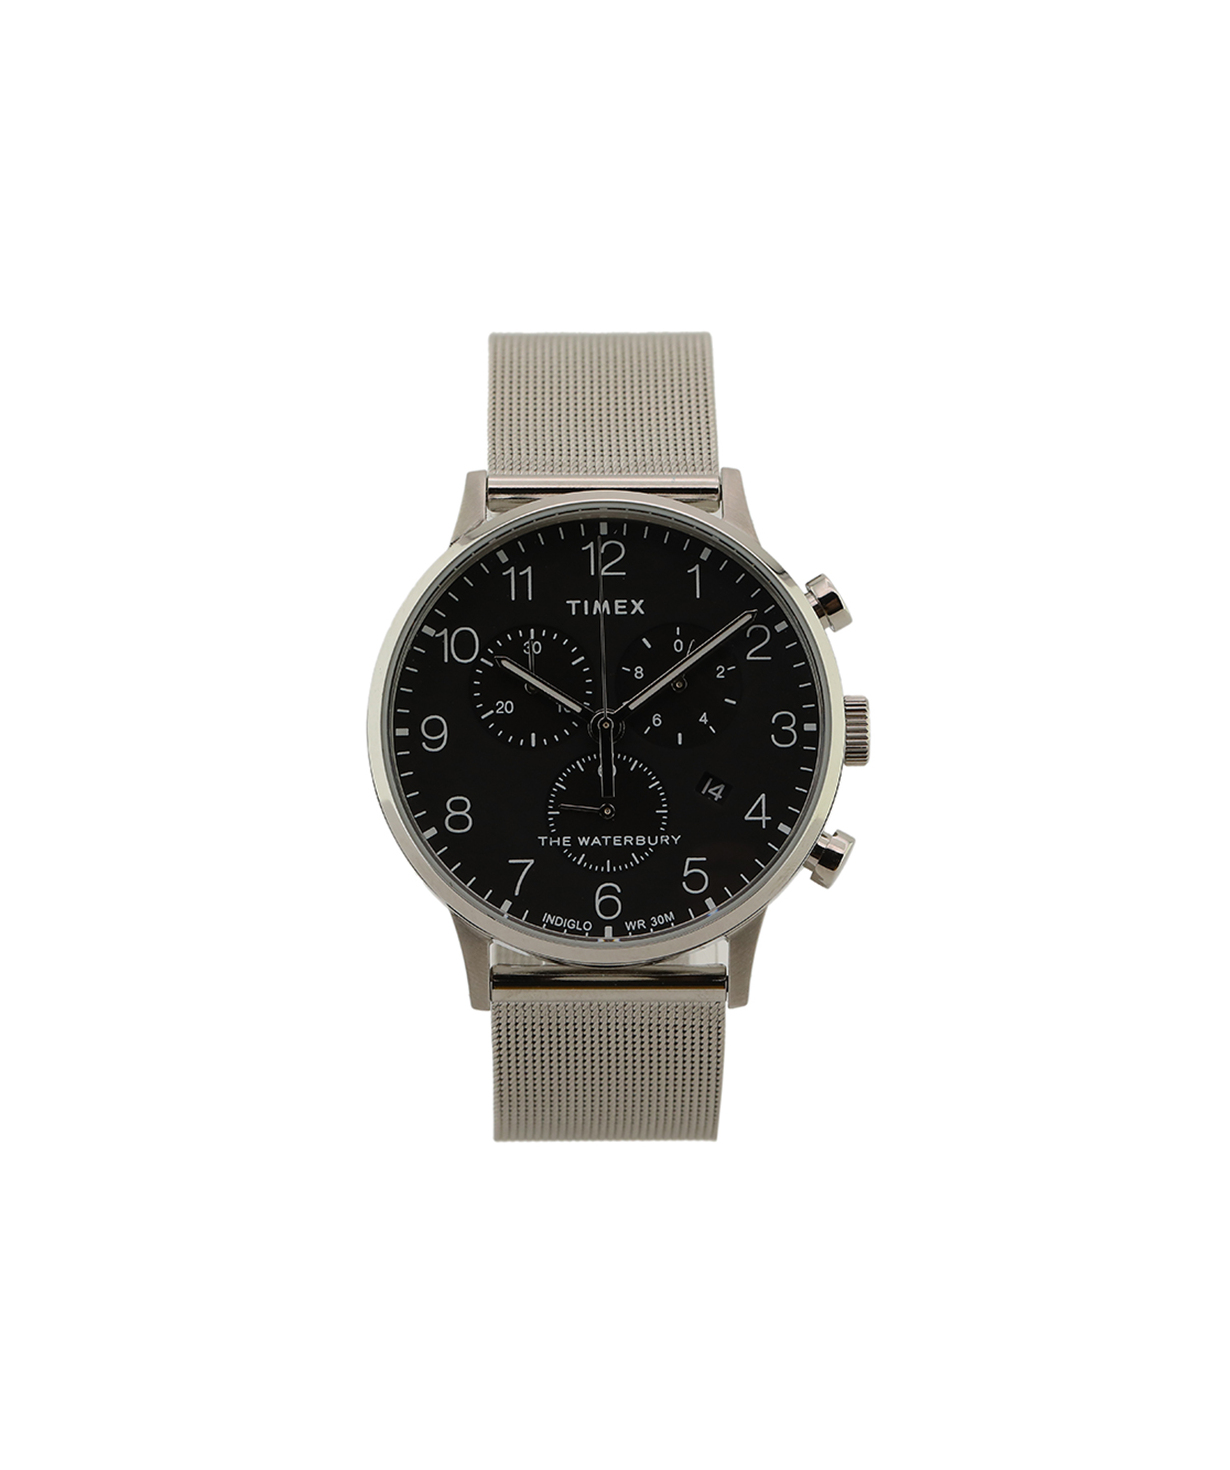 Ժամացույց «Timex» ձեռքի   TW2T36600